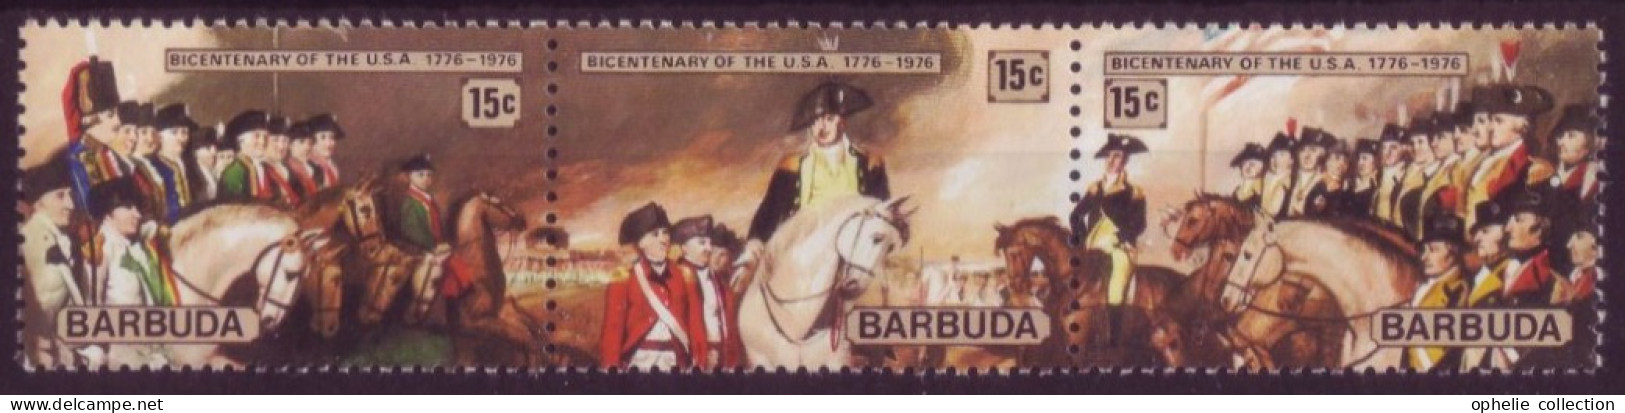 Amérique - Barbuda - Bandeau Bicentenary Of The USA  1776-1976  - 7334 - Autres - Amérique